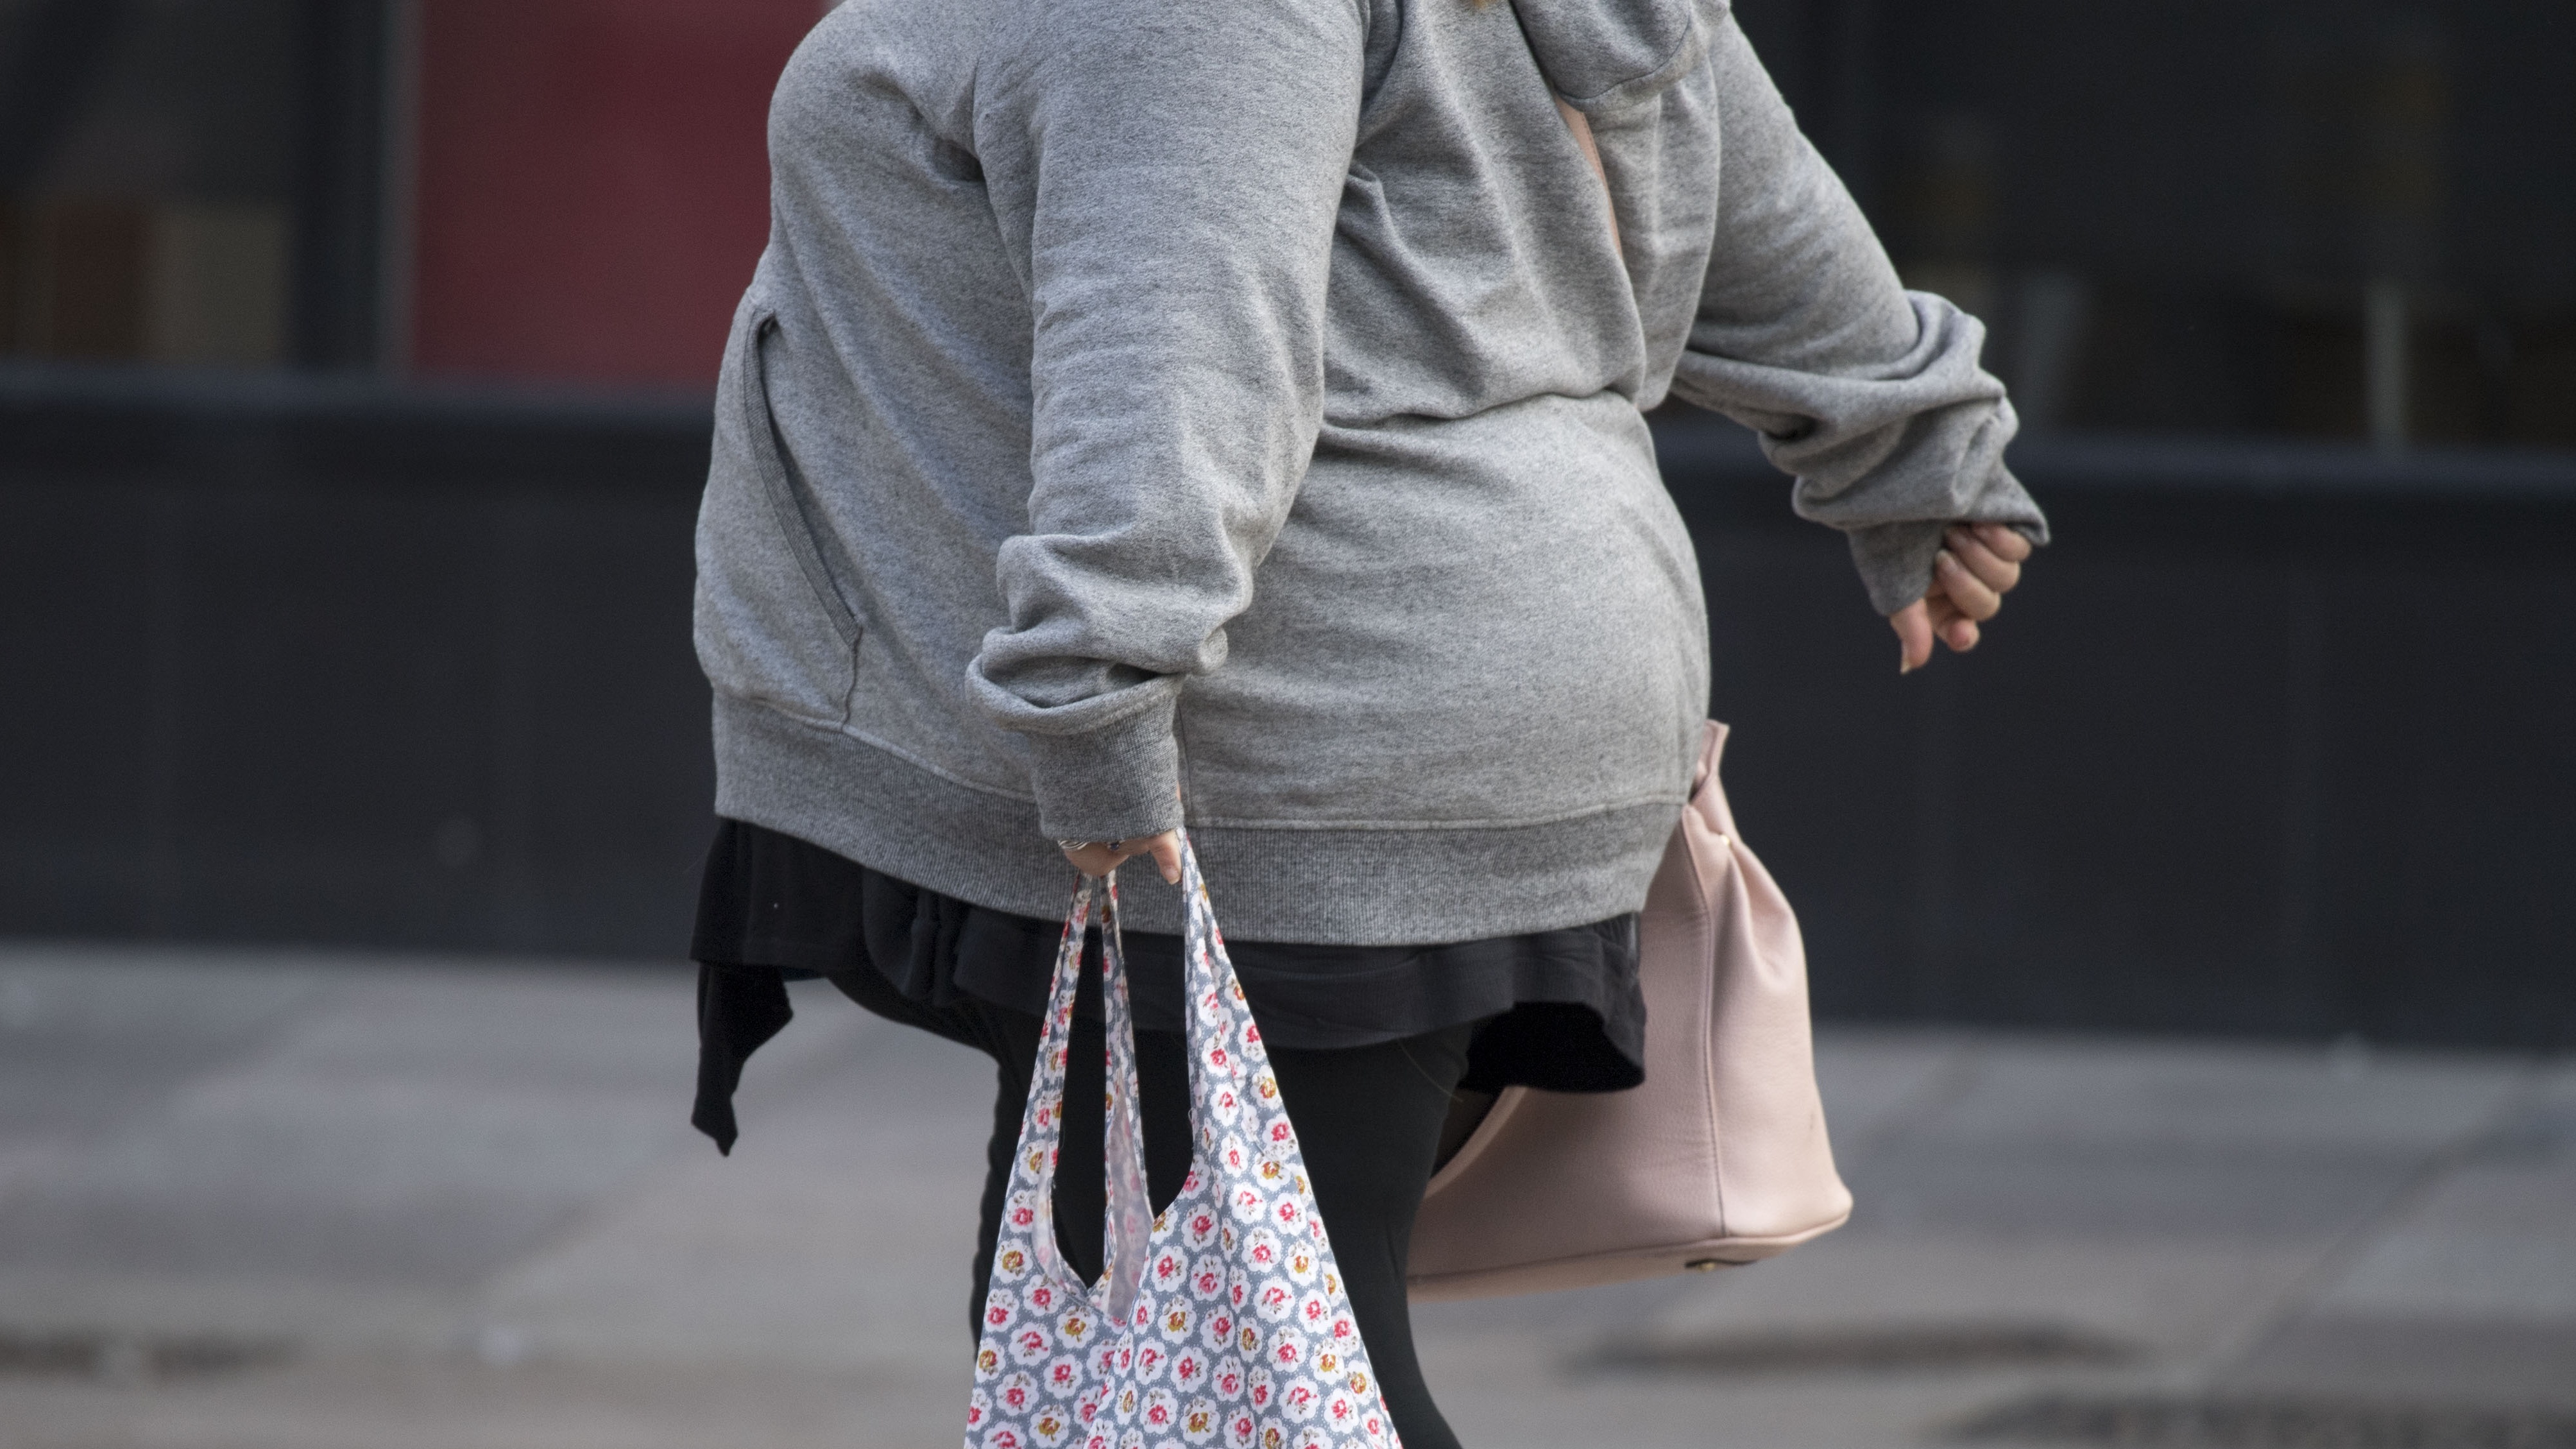 Obese woman walking on pavement